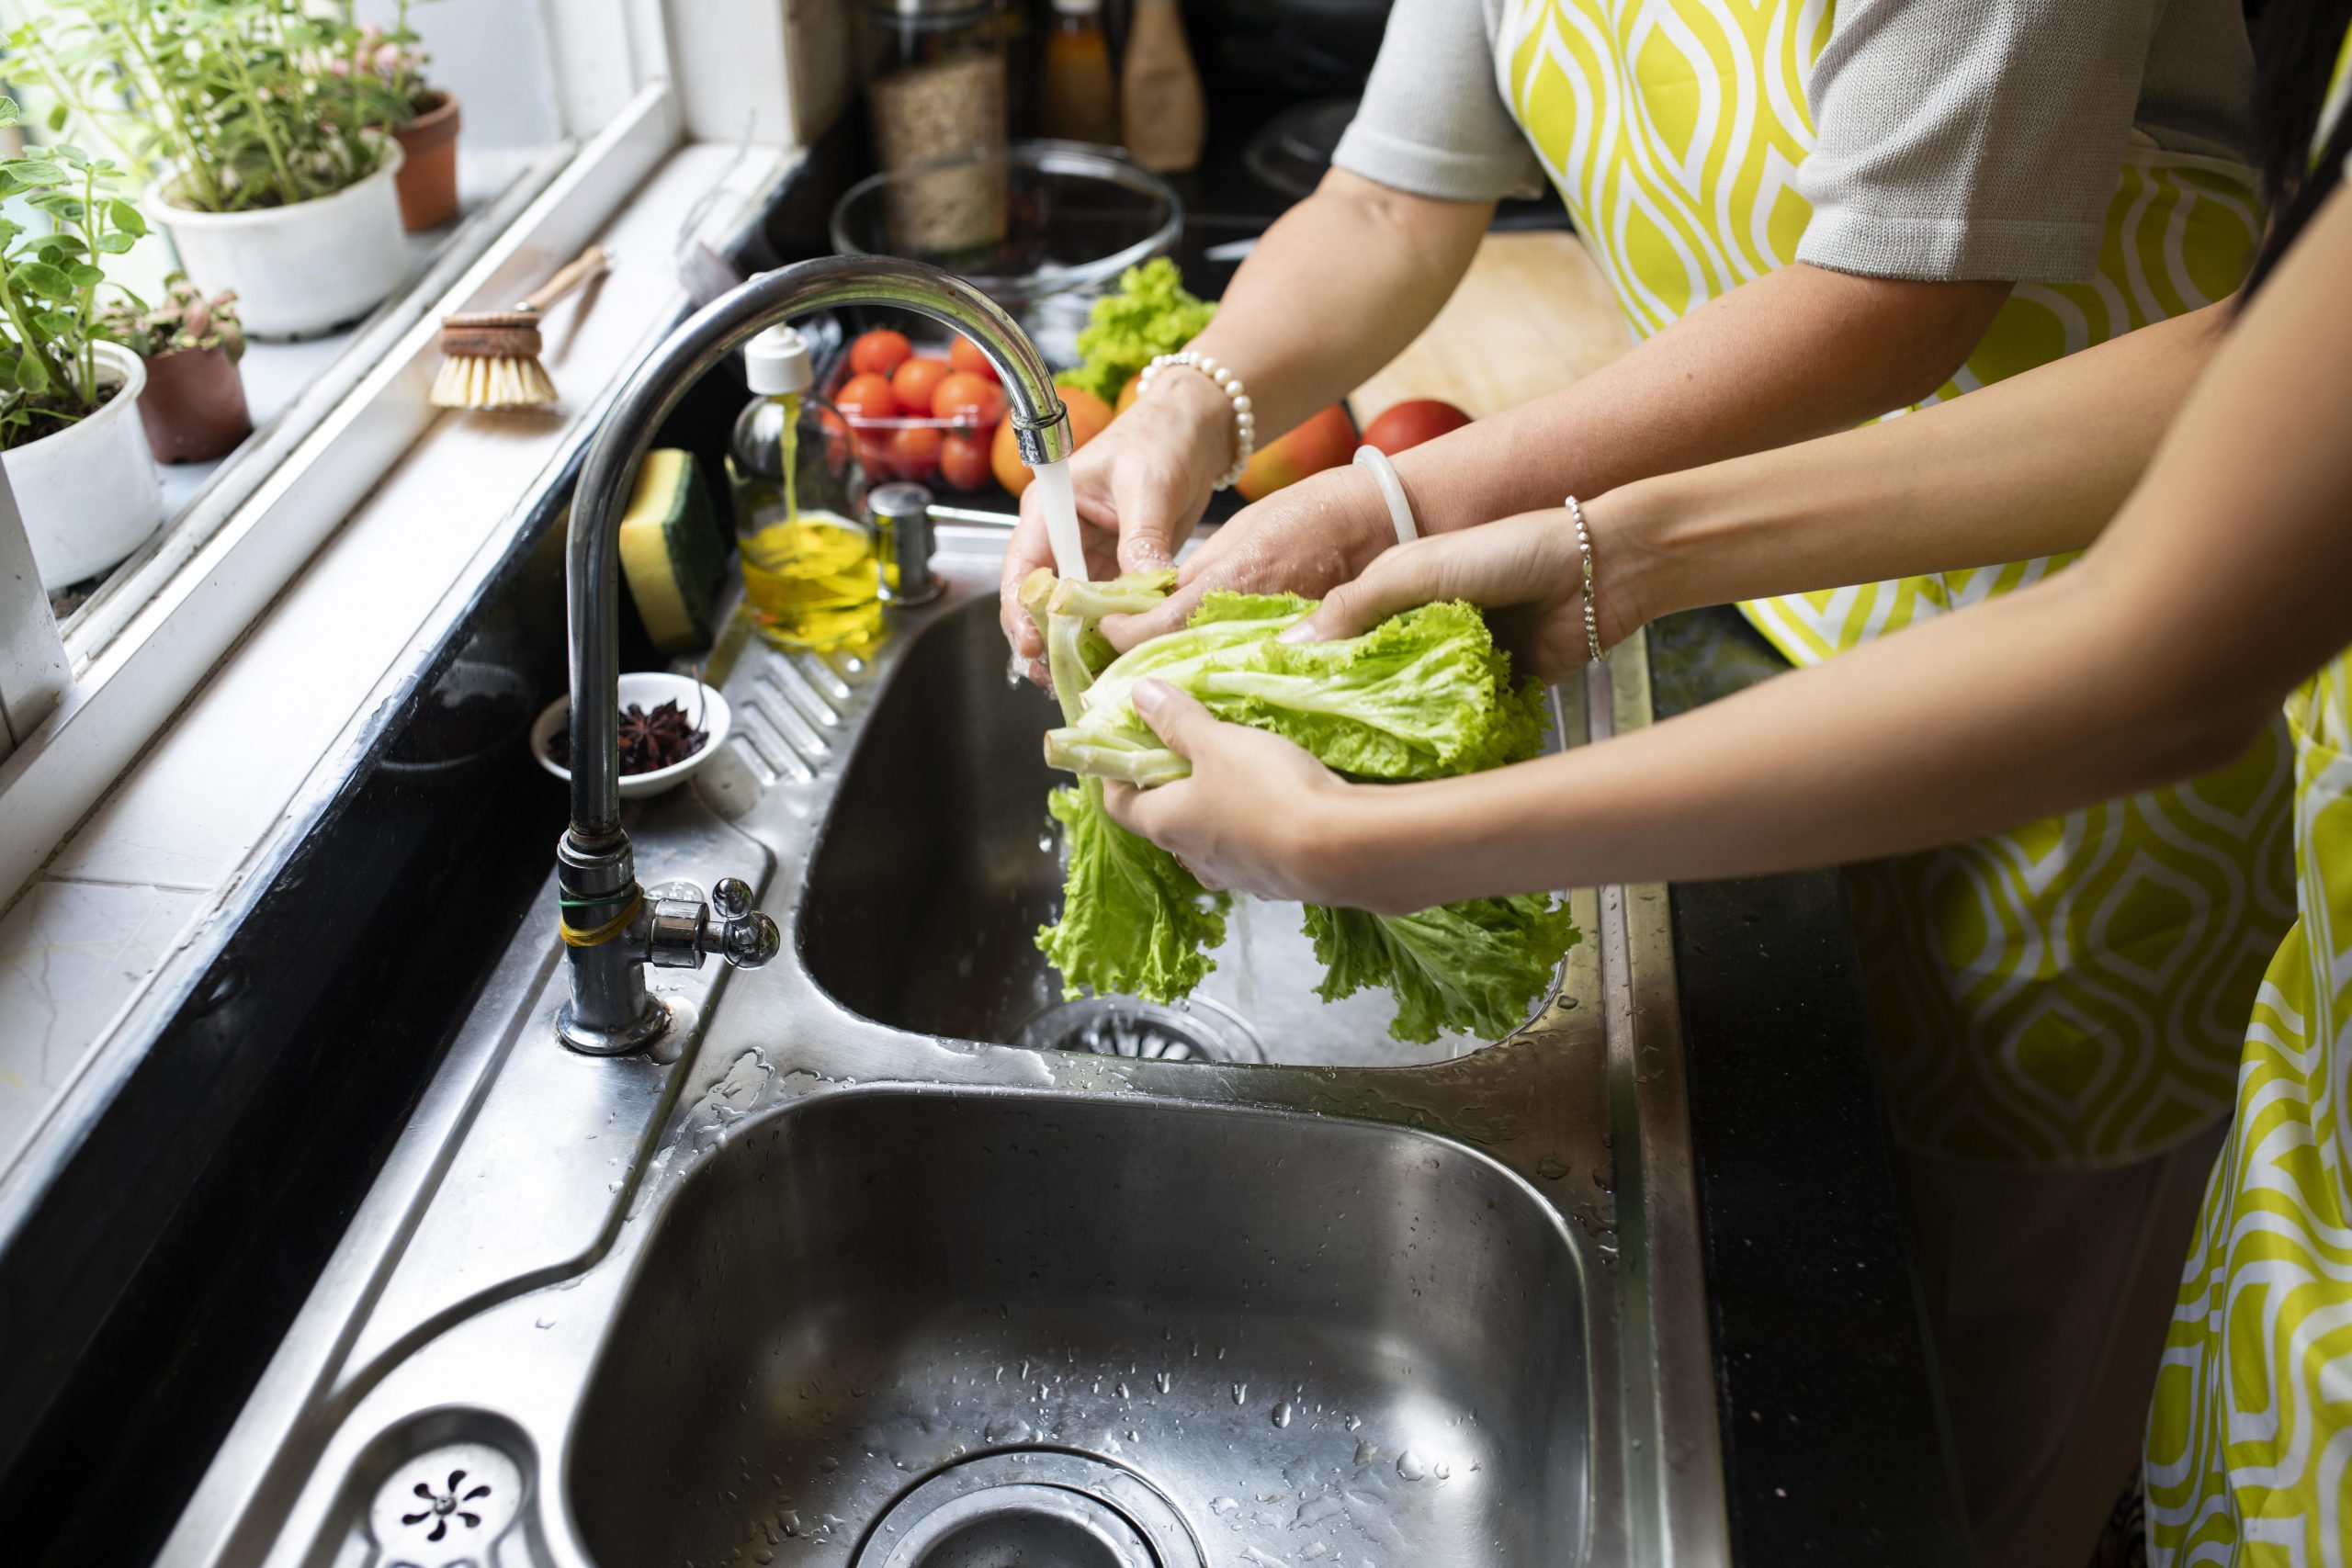 खाने से पहले भूलकर भी न धोएं ये सब्जियां, हो सकते हैं गंभीर बीमारी के शिकार